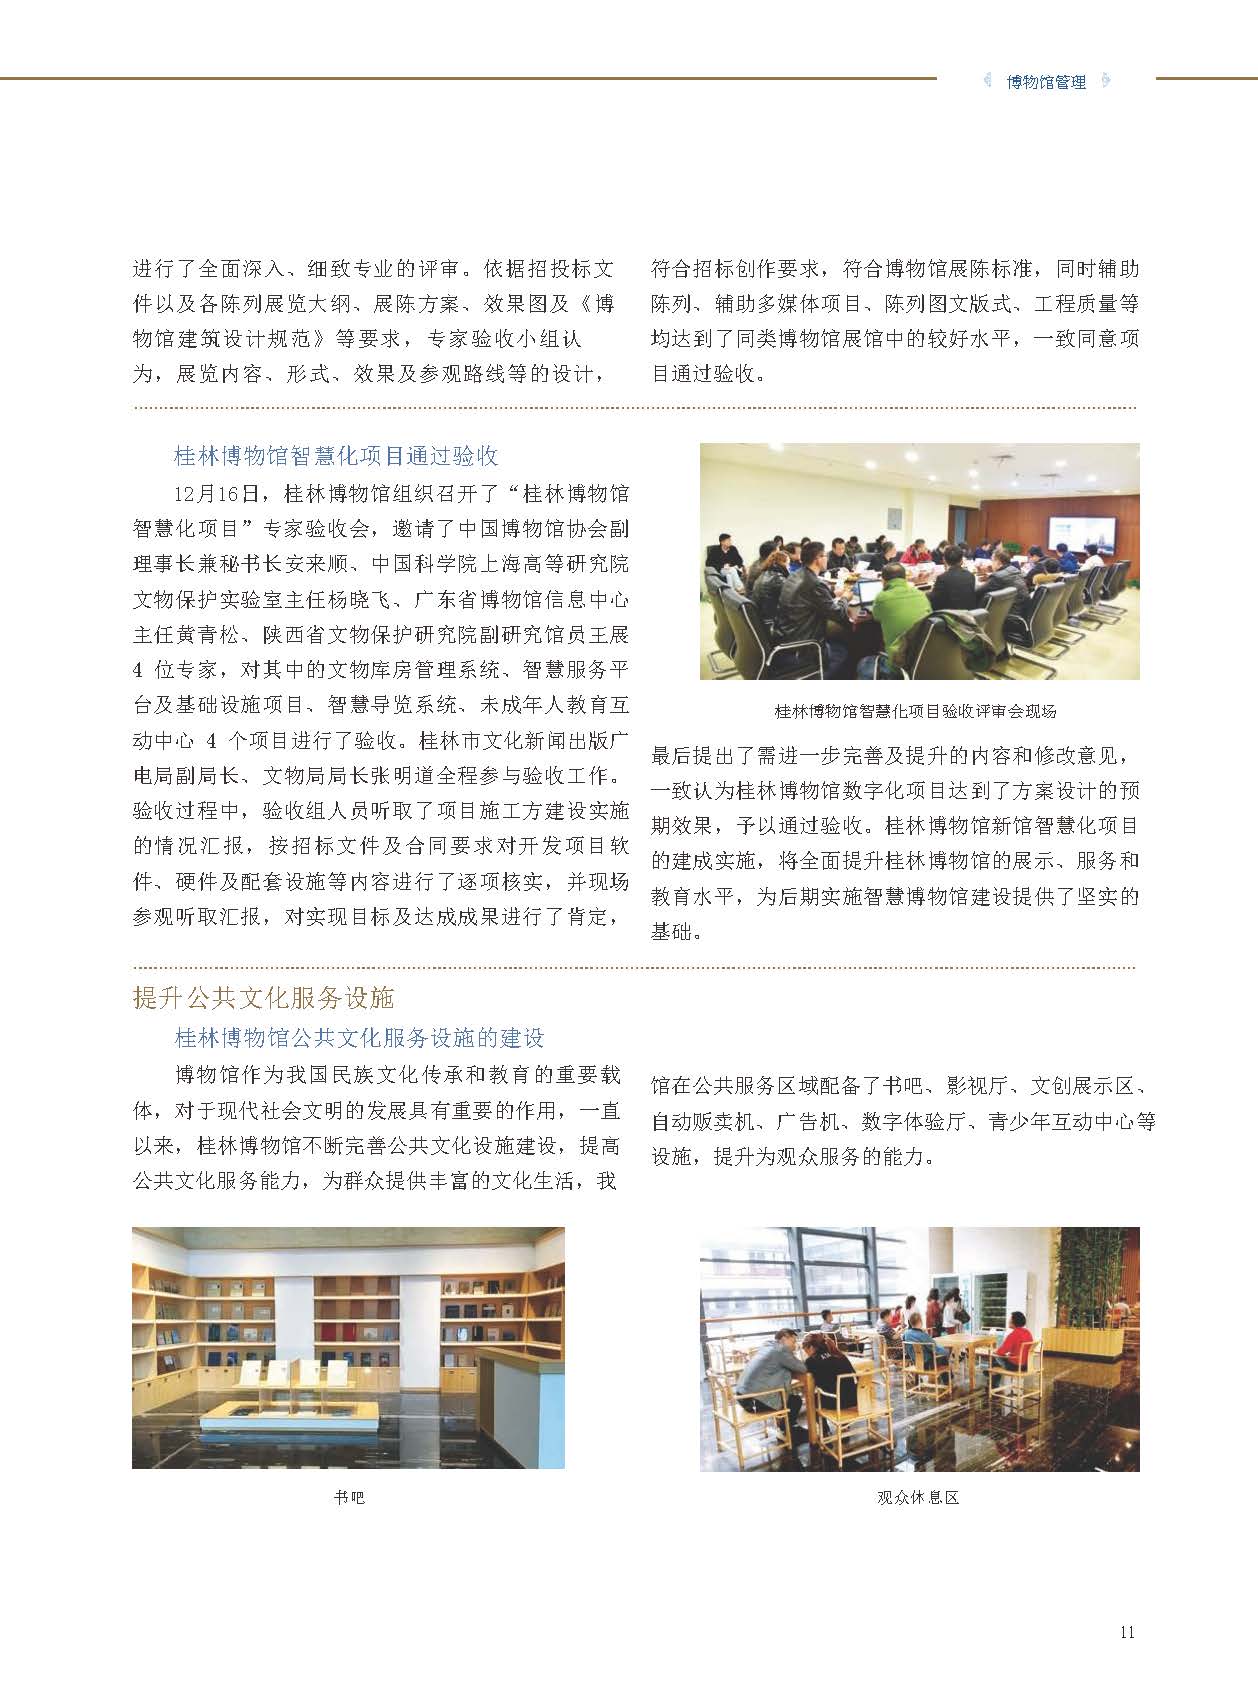 桂林博物馆2017年度报告.pdf_页面_13.jpg